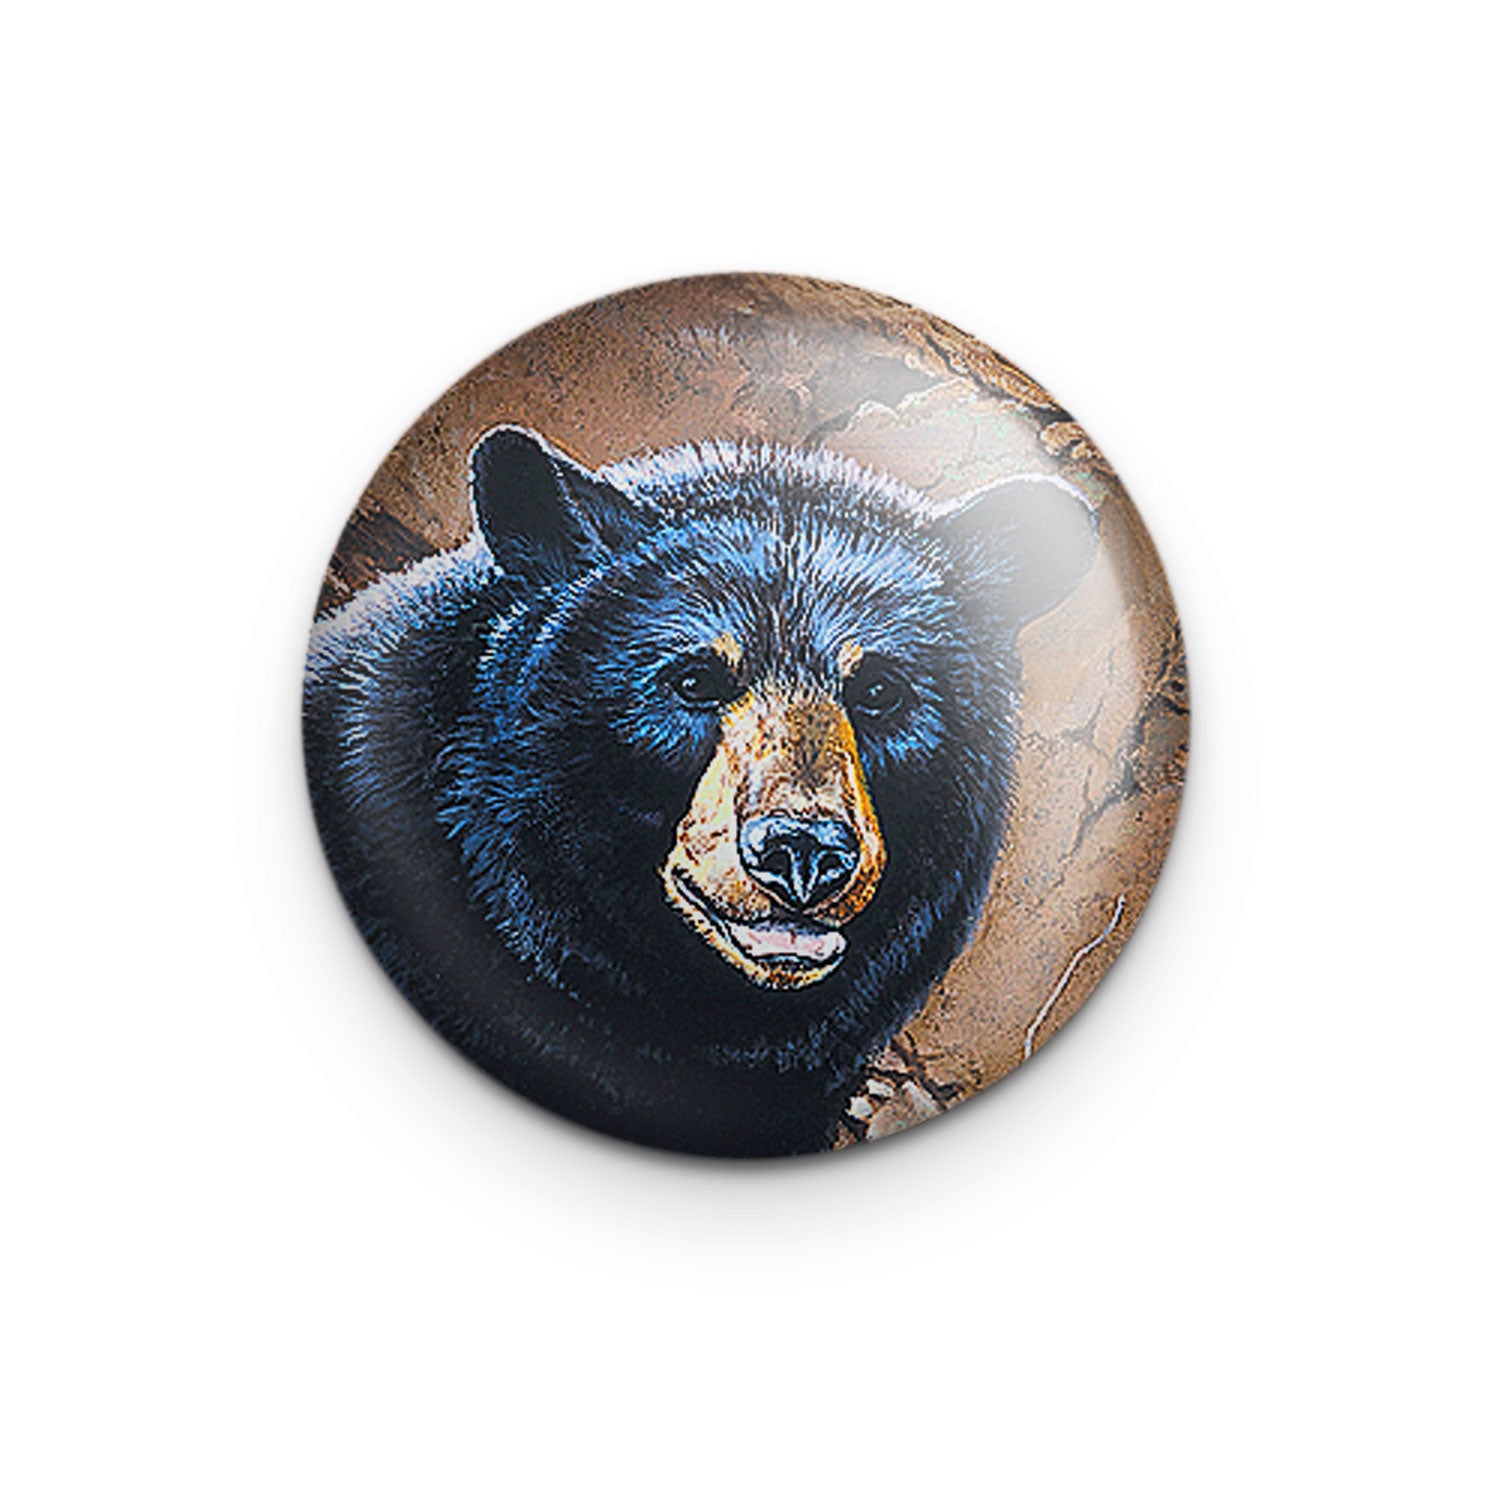 "Allegheny Black Bear" - 1" Round Pinback Button